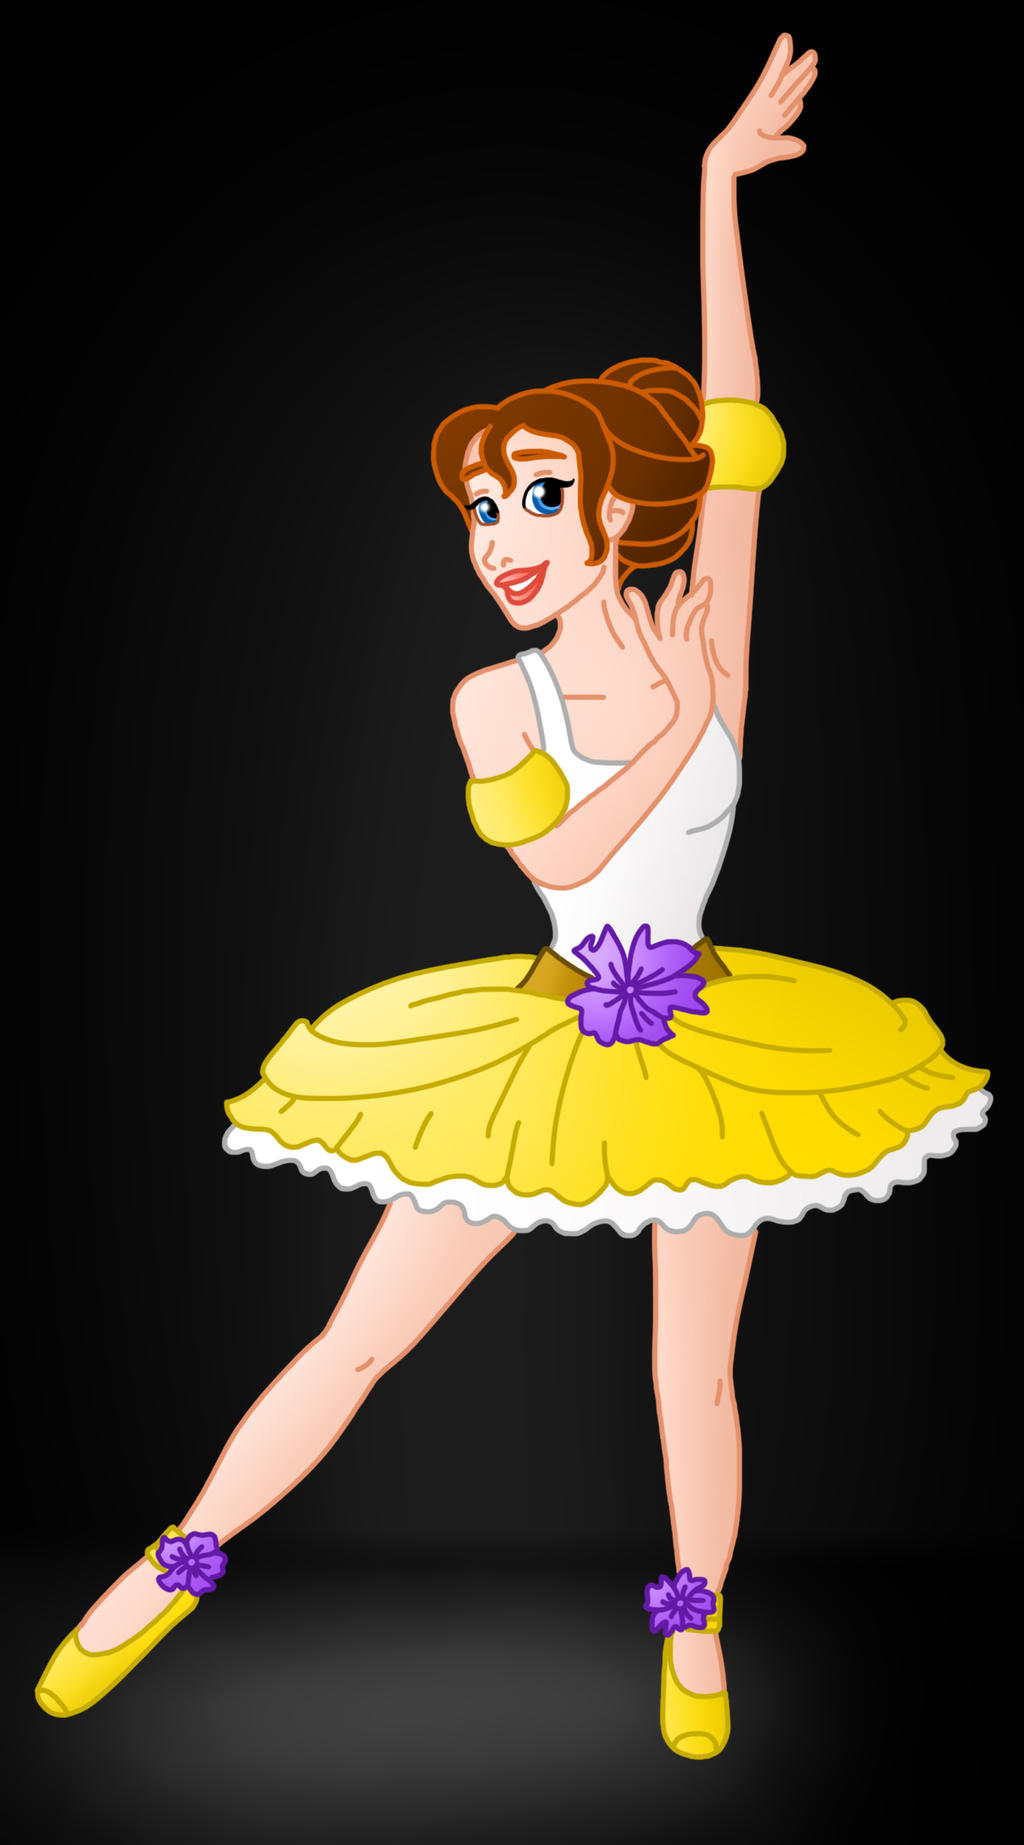 Disney Ballerina: Cinderella by Willemijn1991 on 